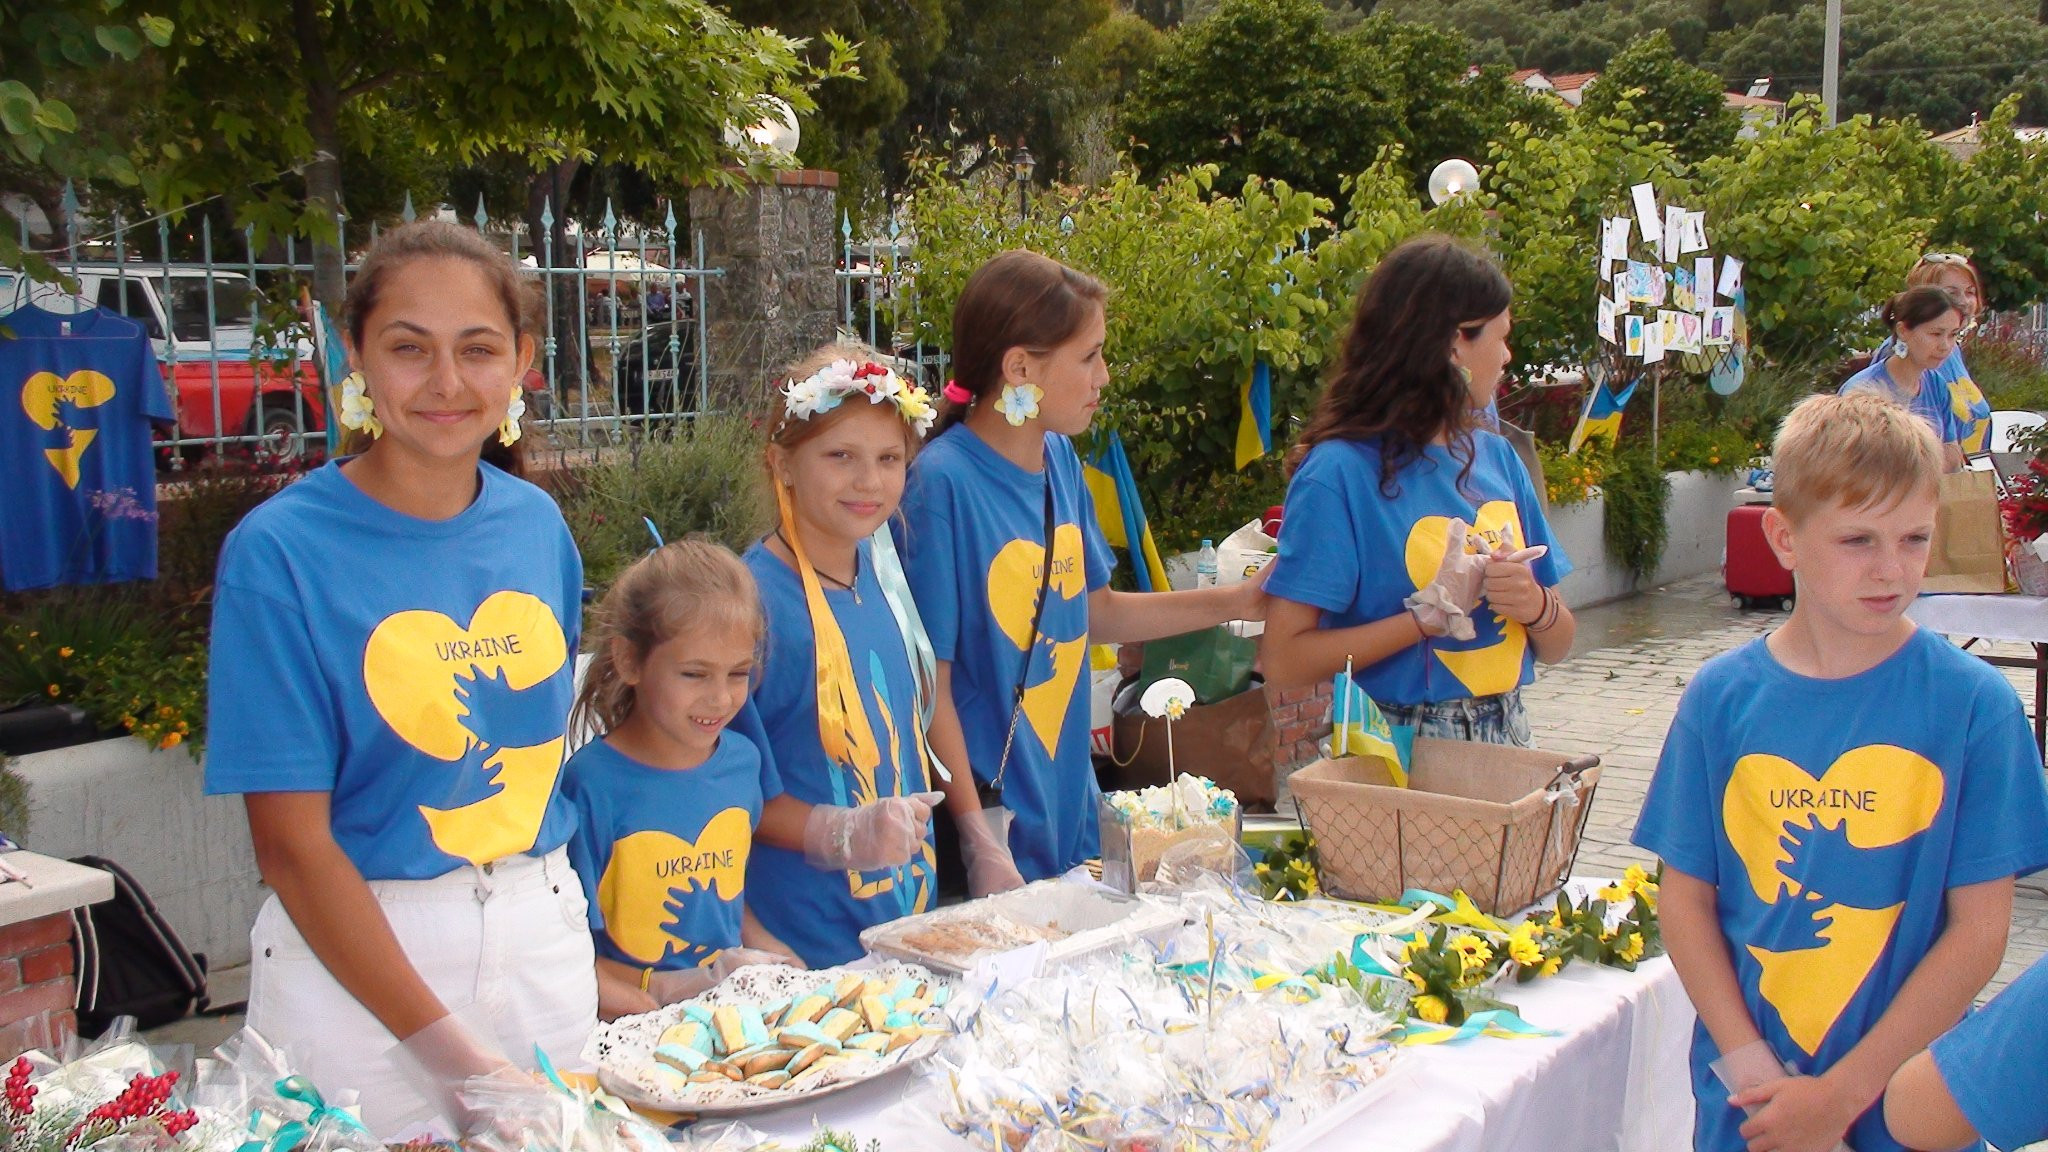 Γιορτή αγάπης και στήριξης για τα παιδιά της Ουκρανίας, στη Μαρίνα Μπενιτσών (photos)